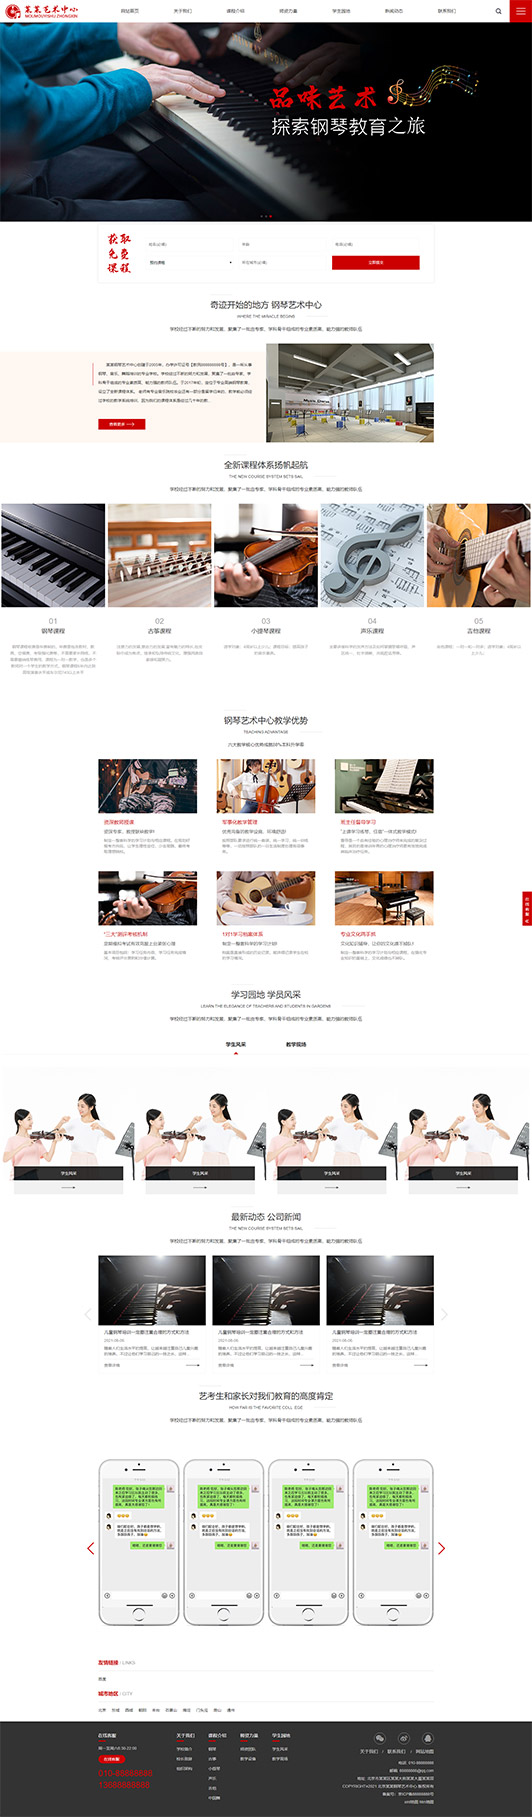 昌都钢琴艺术培训公司响应式企业网站